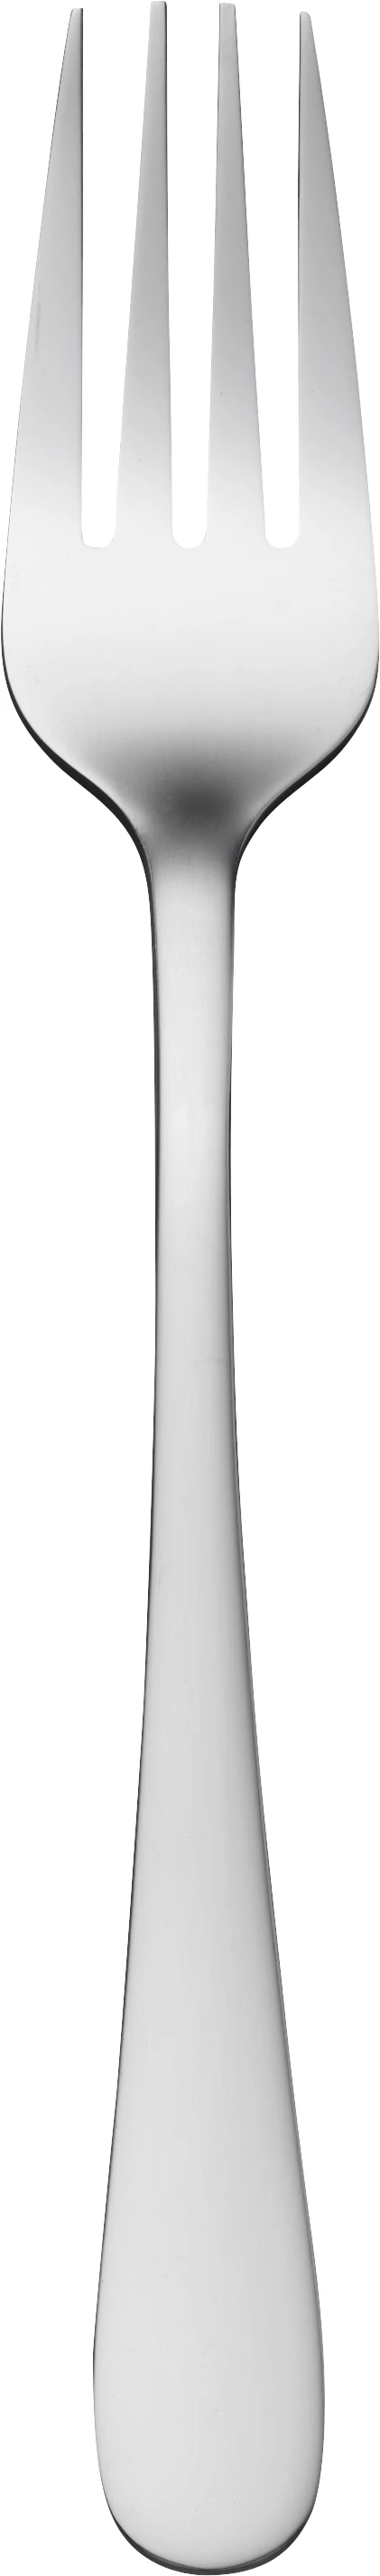 Nordic spisegaffel, 19 cm